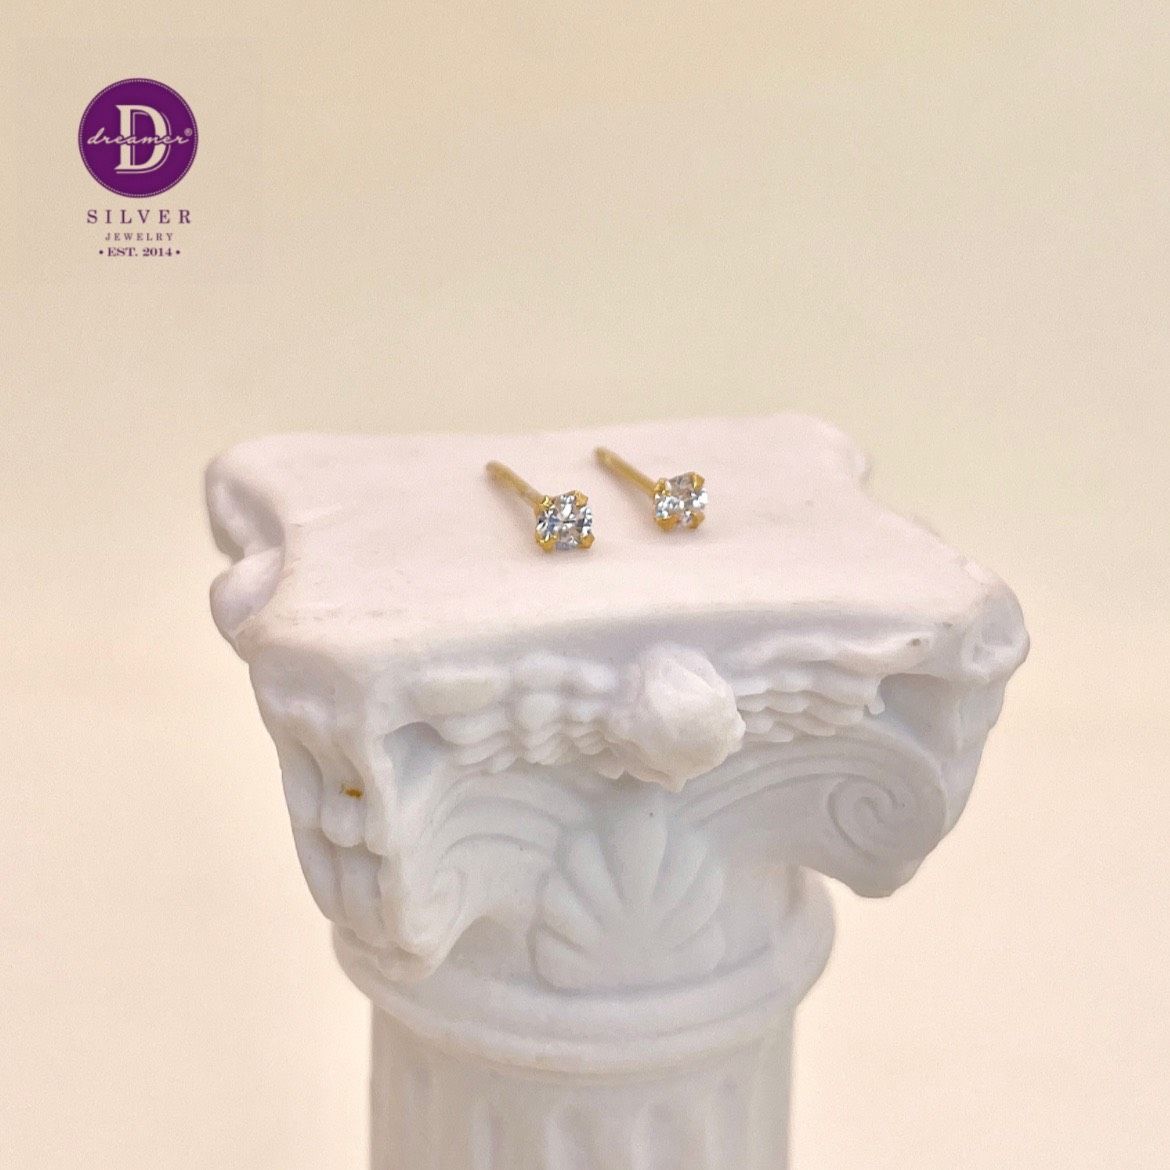  Gemstone Earrings - Gold Plated Earrings - Hoa tai Gem Stone Đá Trắng (2 li) - Đá Vuông (5 li) - Đá 6 chấu (7li)  1021BTH 2476BTH 2399BTDV 